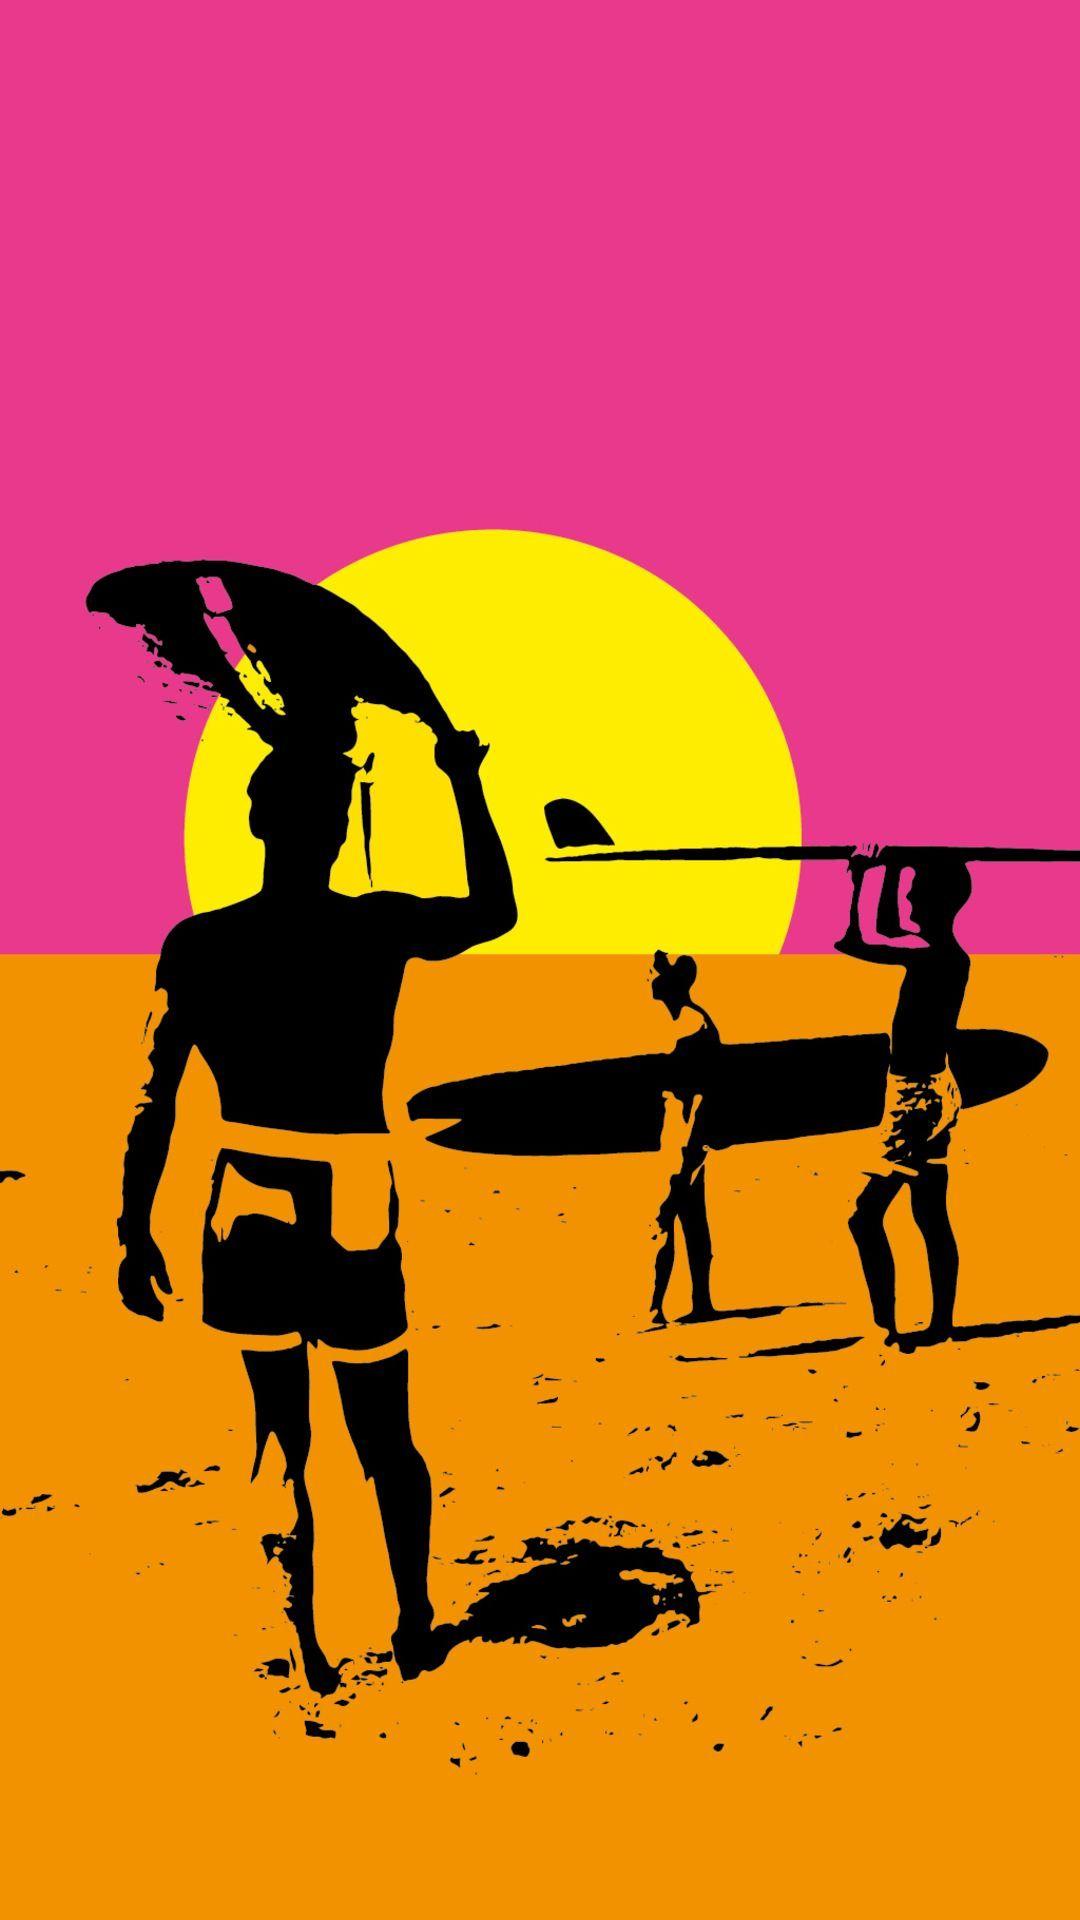 1080 x 1920 · jpeg - Surfing | Surfing wallpaper, Retro surf, Surf art